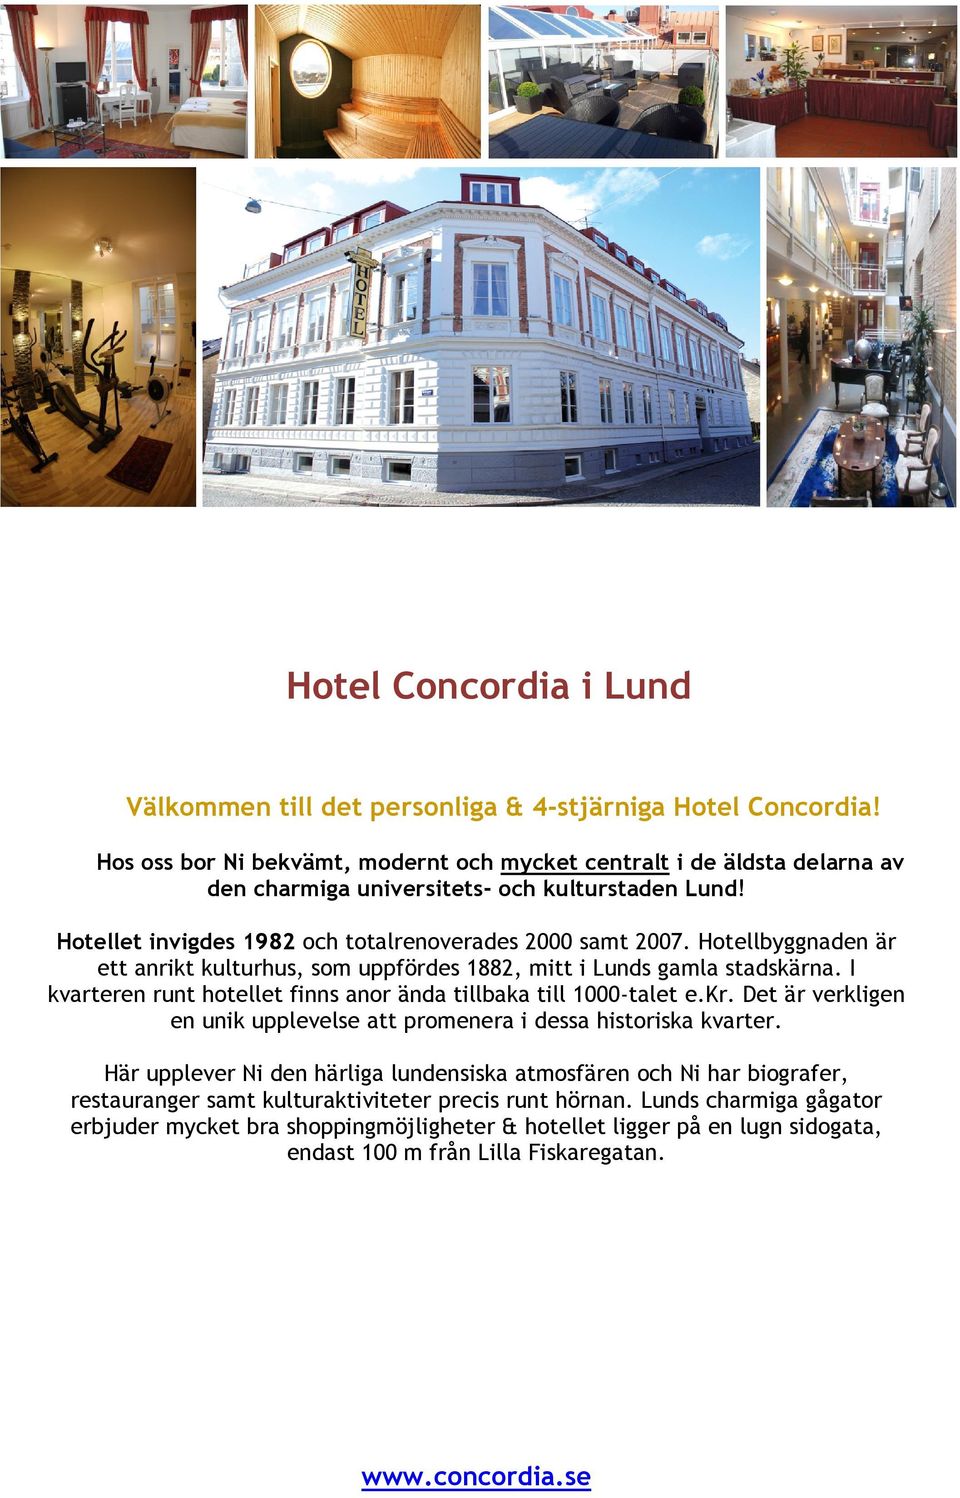 Hotellbyggnaden är ett anrikt kulturhus, som uppfördes 1882, mitt i Lunds gamla stadskärna. I kvarteren runt hotellet finns anor ända tillbaka till 1000-talet e.kr.